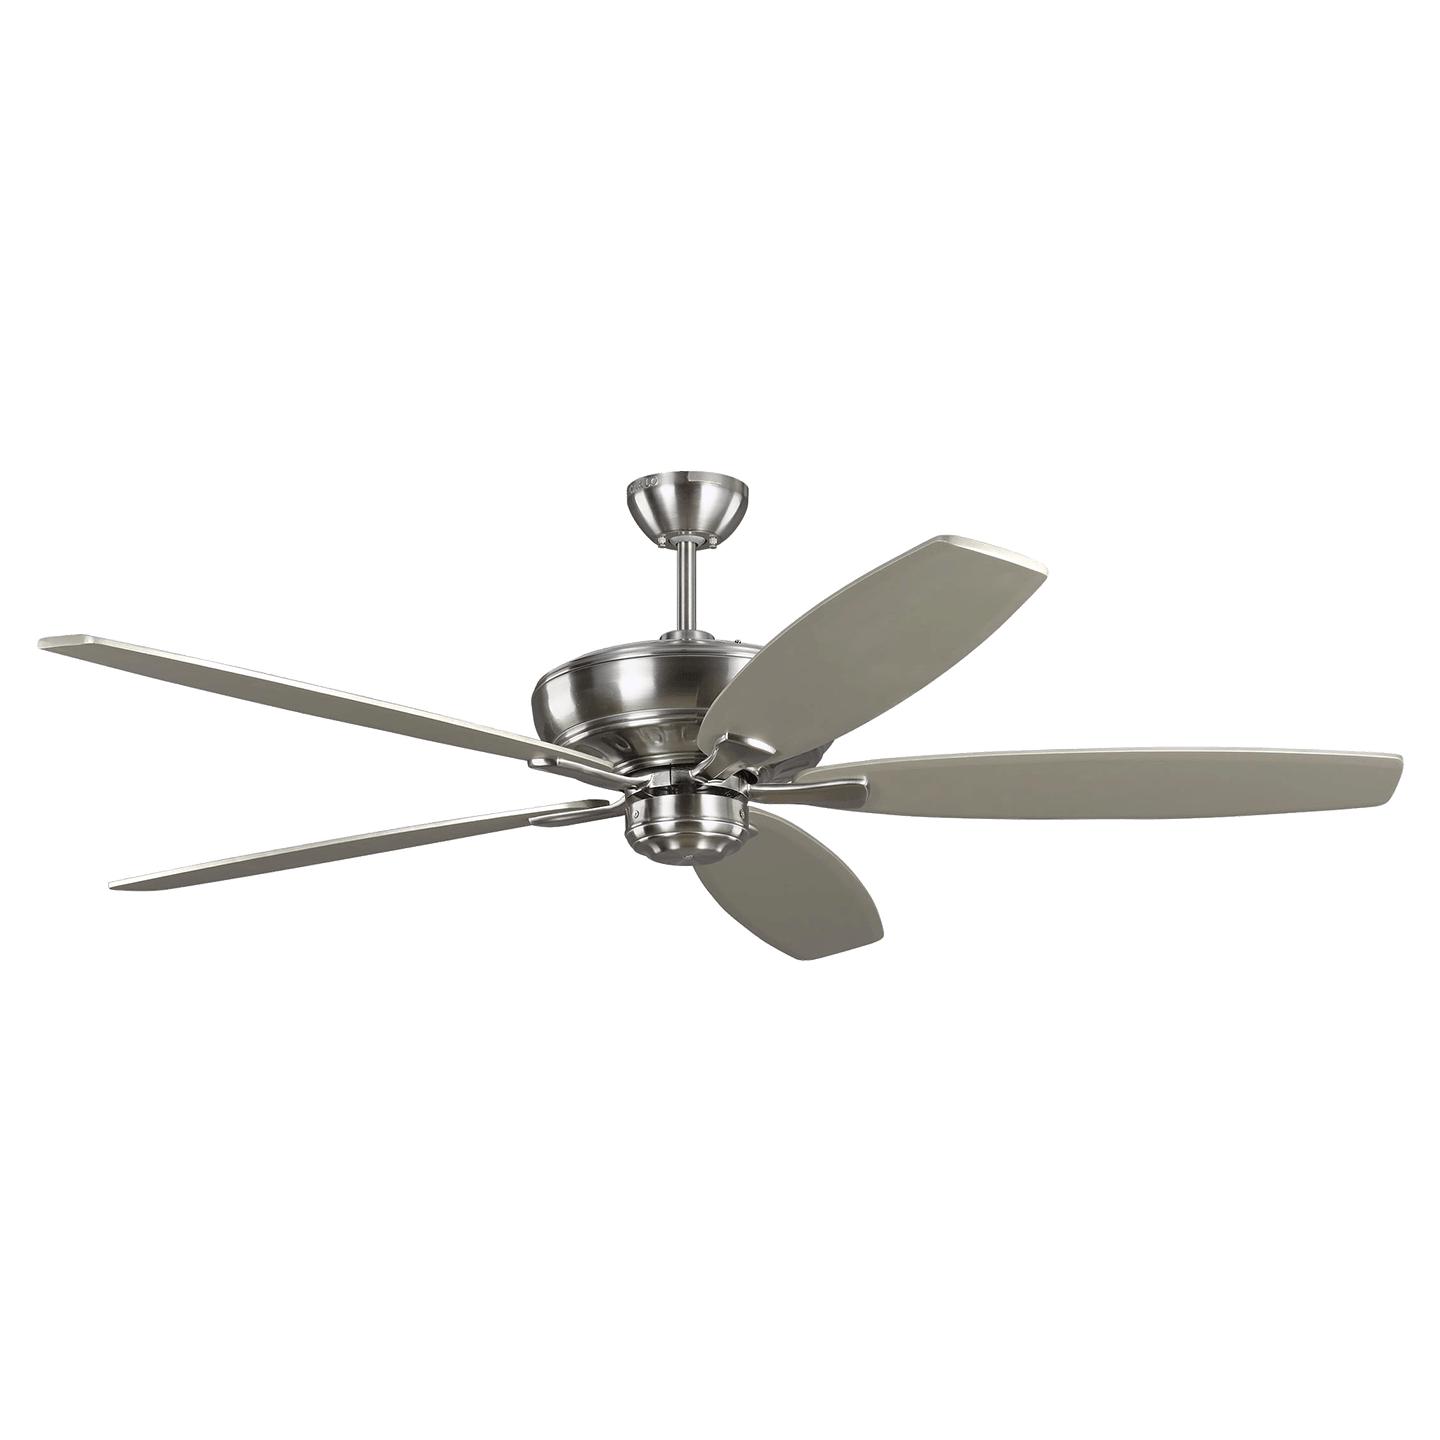 Купить Потолочный вентилятор Dover 60" Ceiling Fan в интернет-магазине roooms.ru